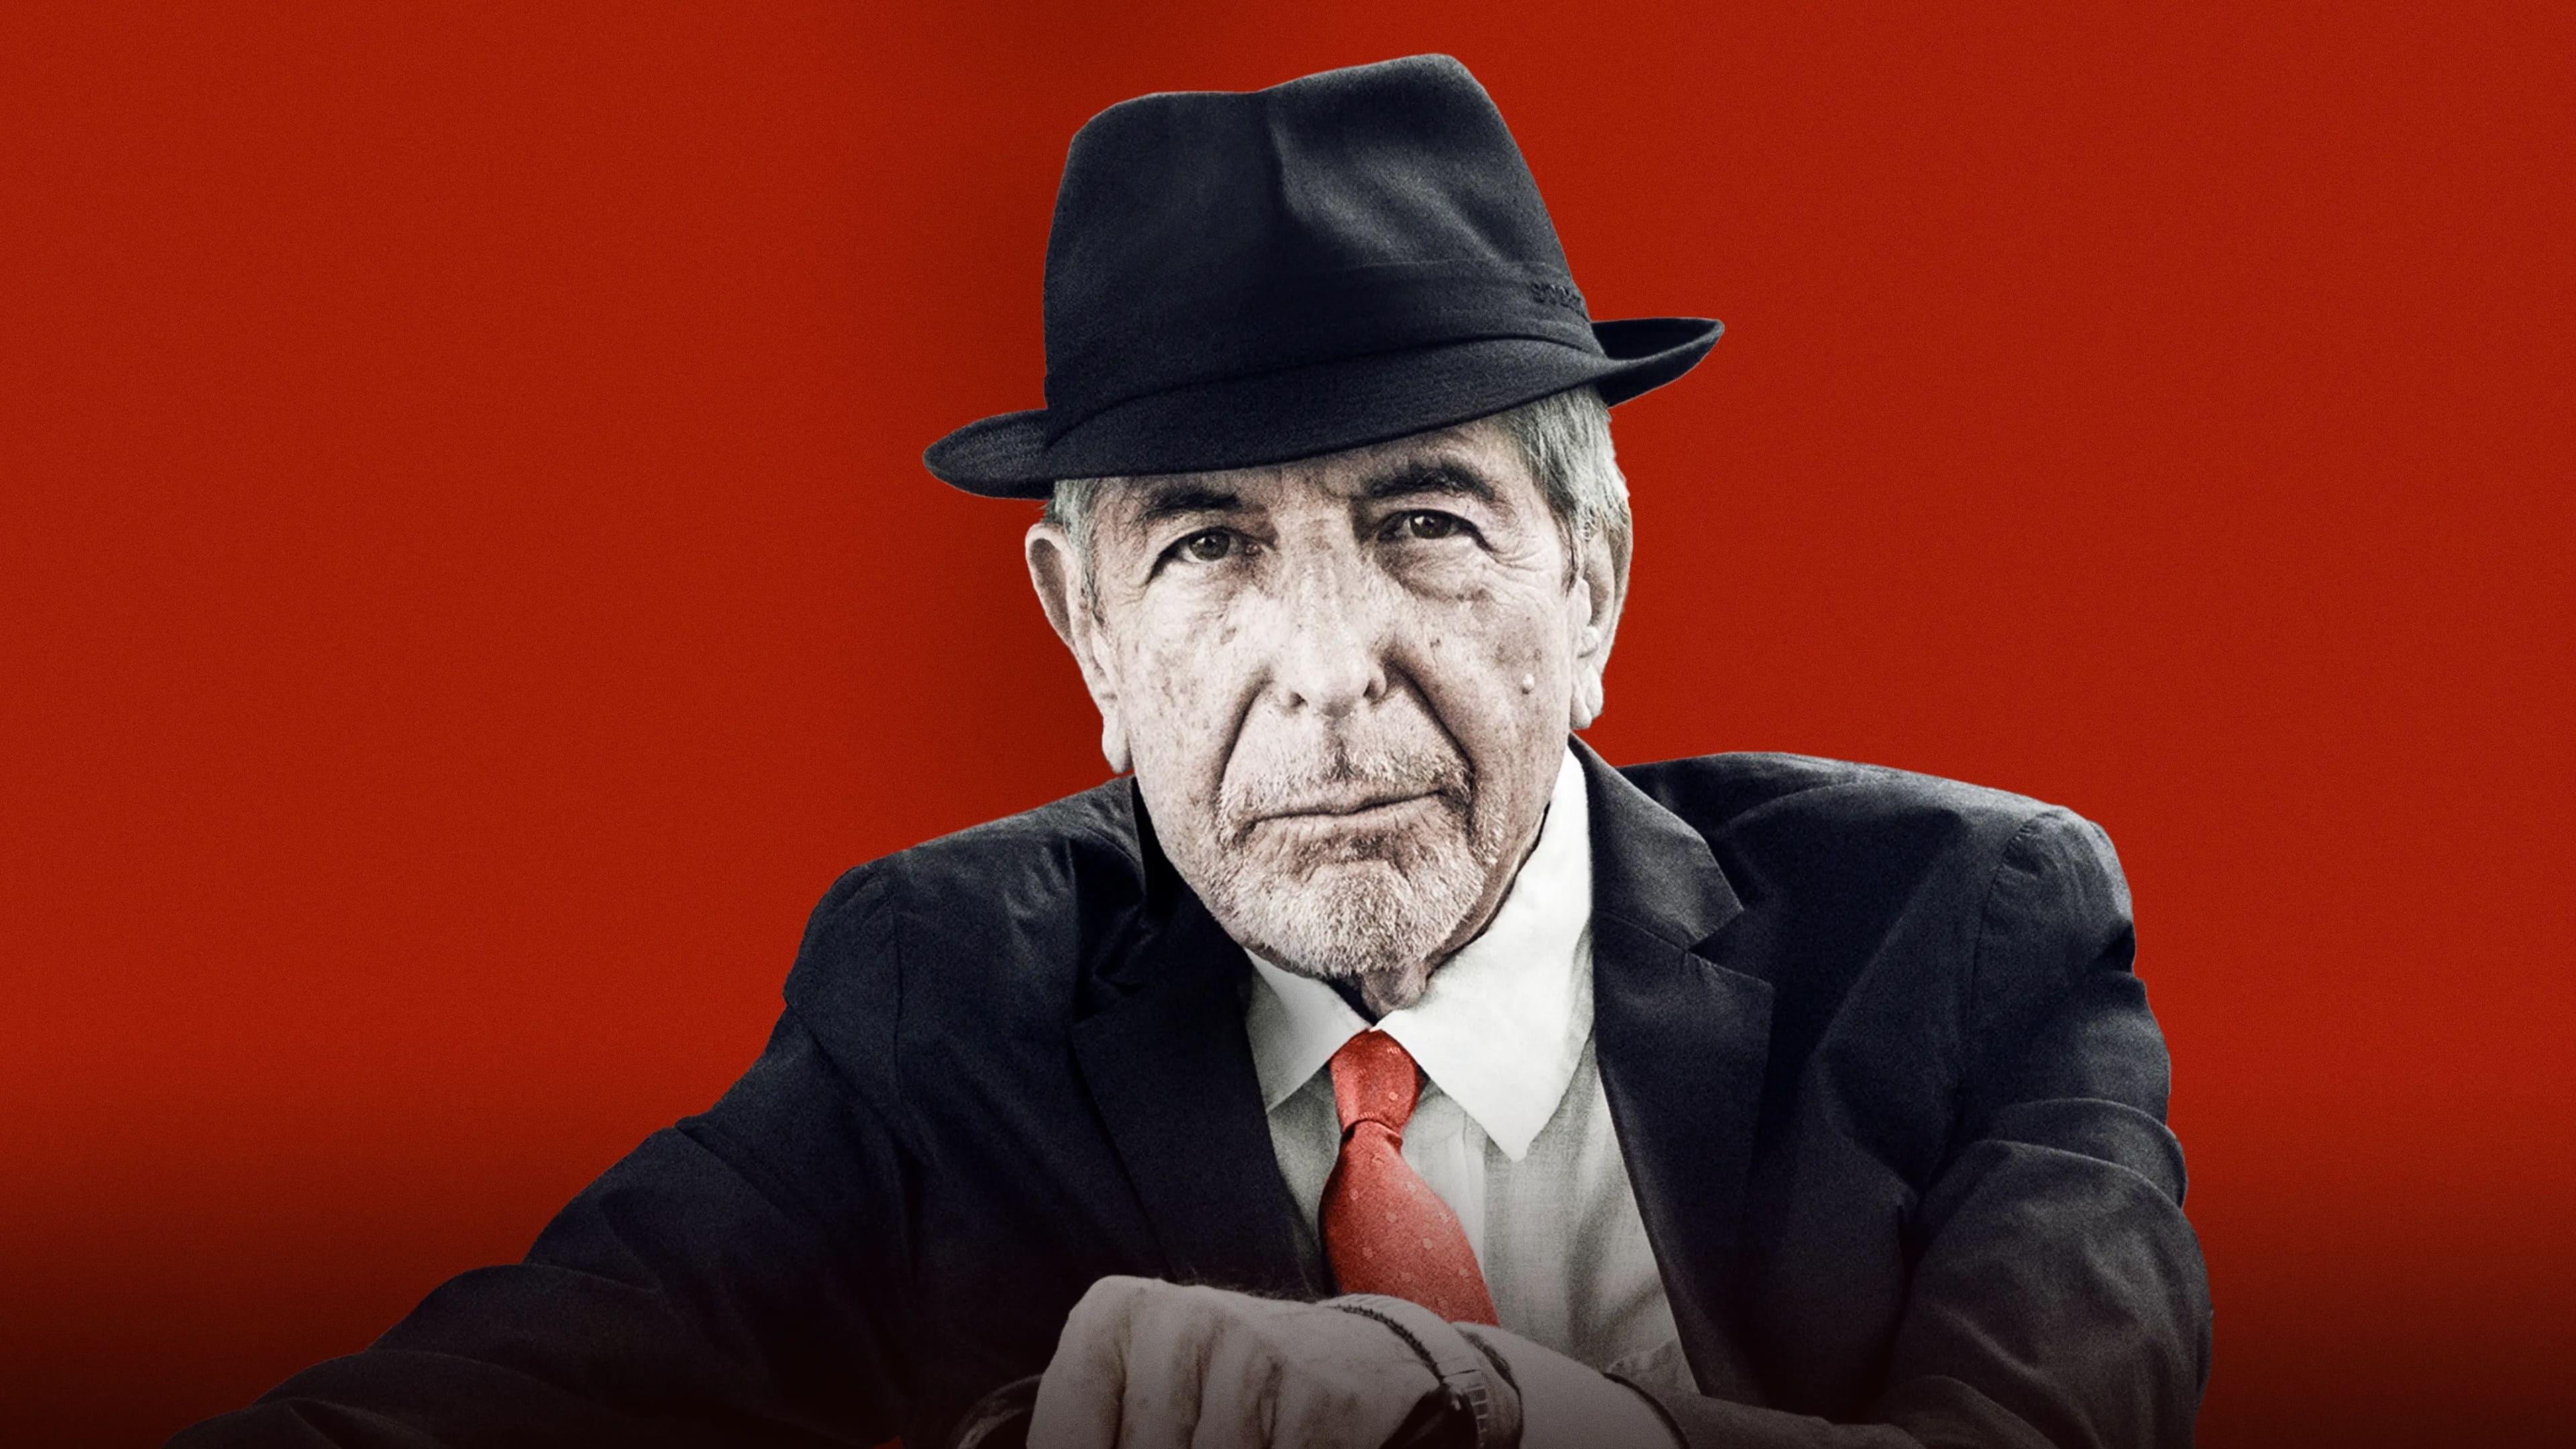 Leonard Cohen backdrop